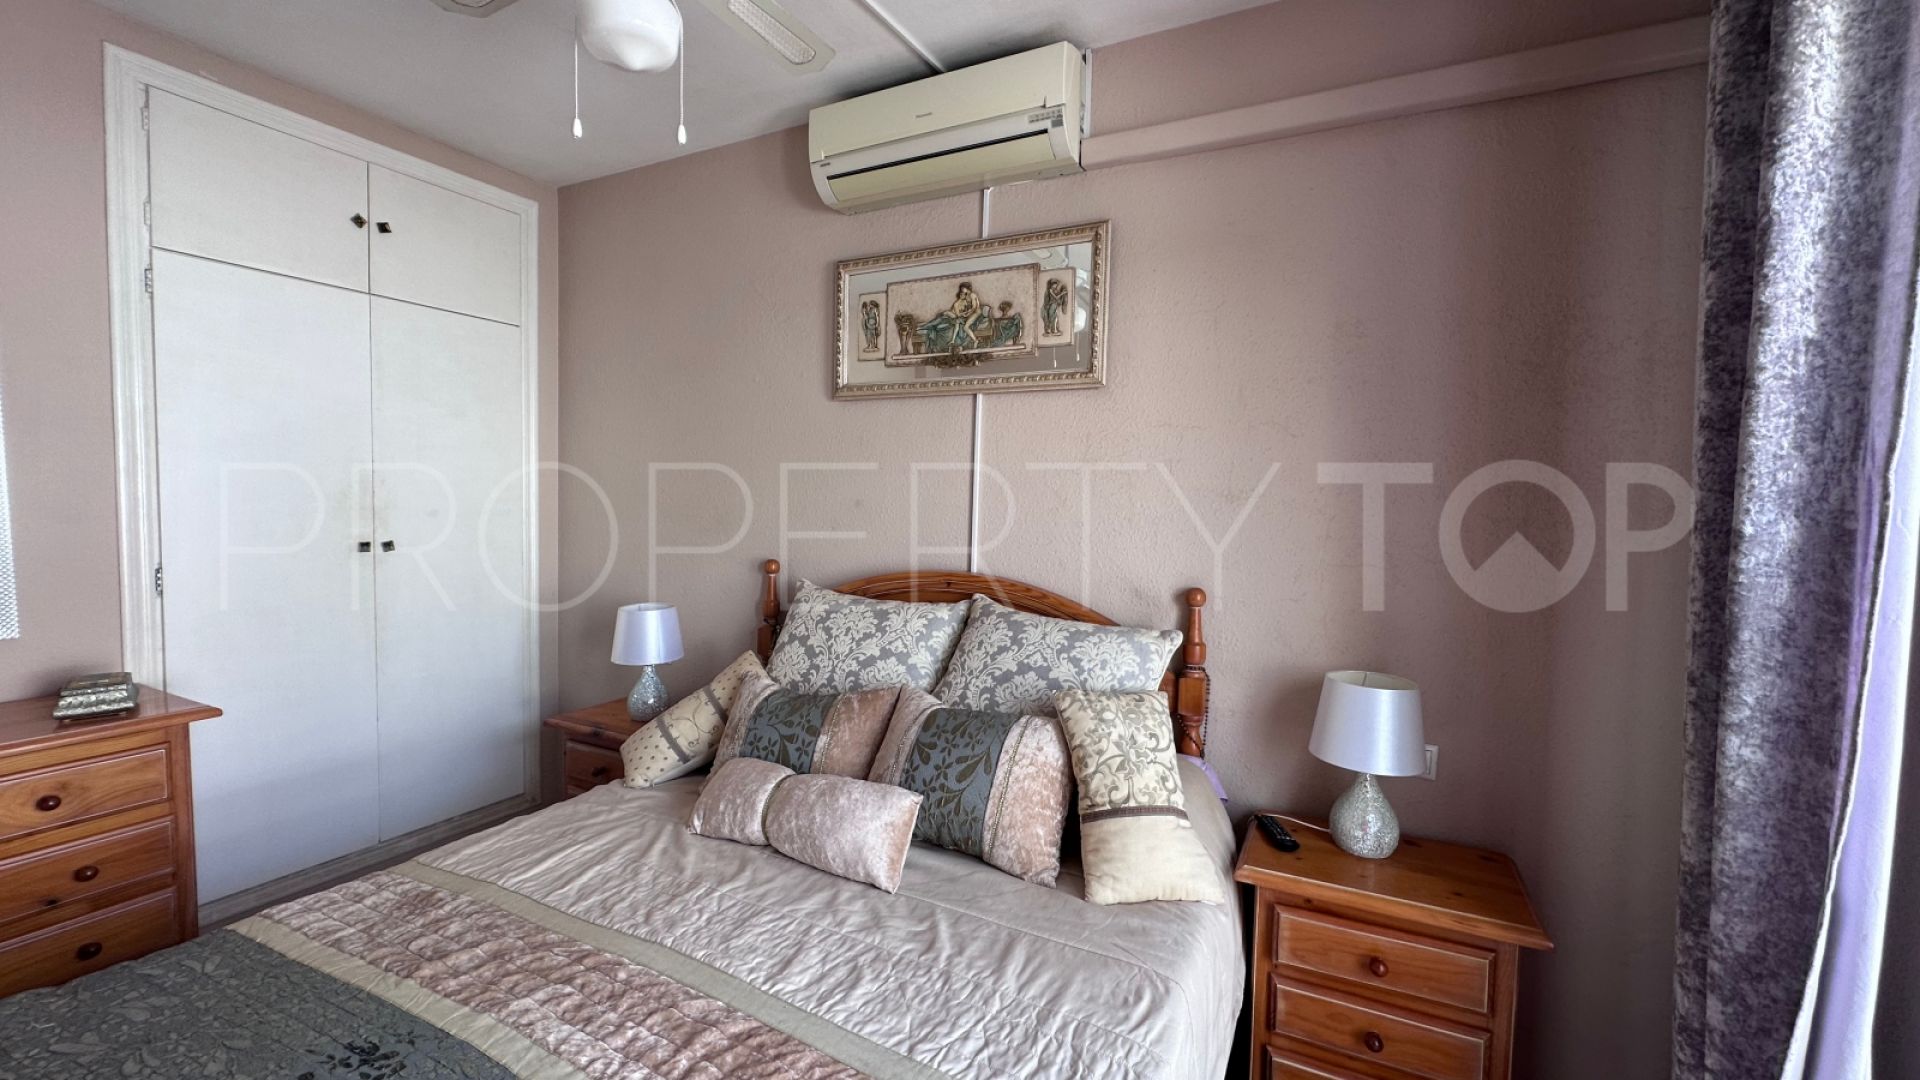 Bel Air, pareado de 3 dormitorios en venta